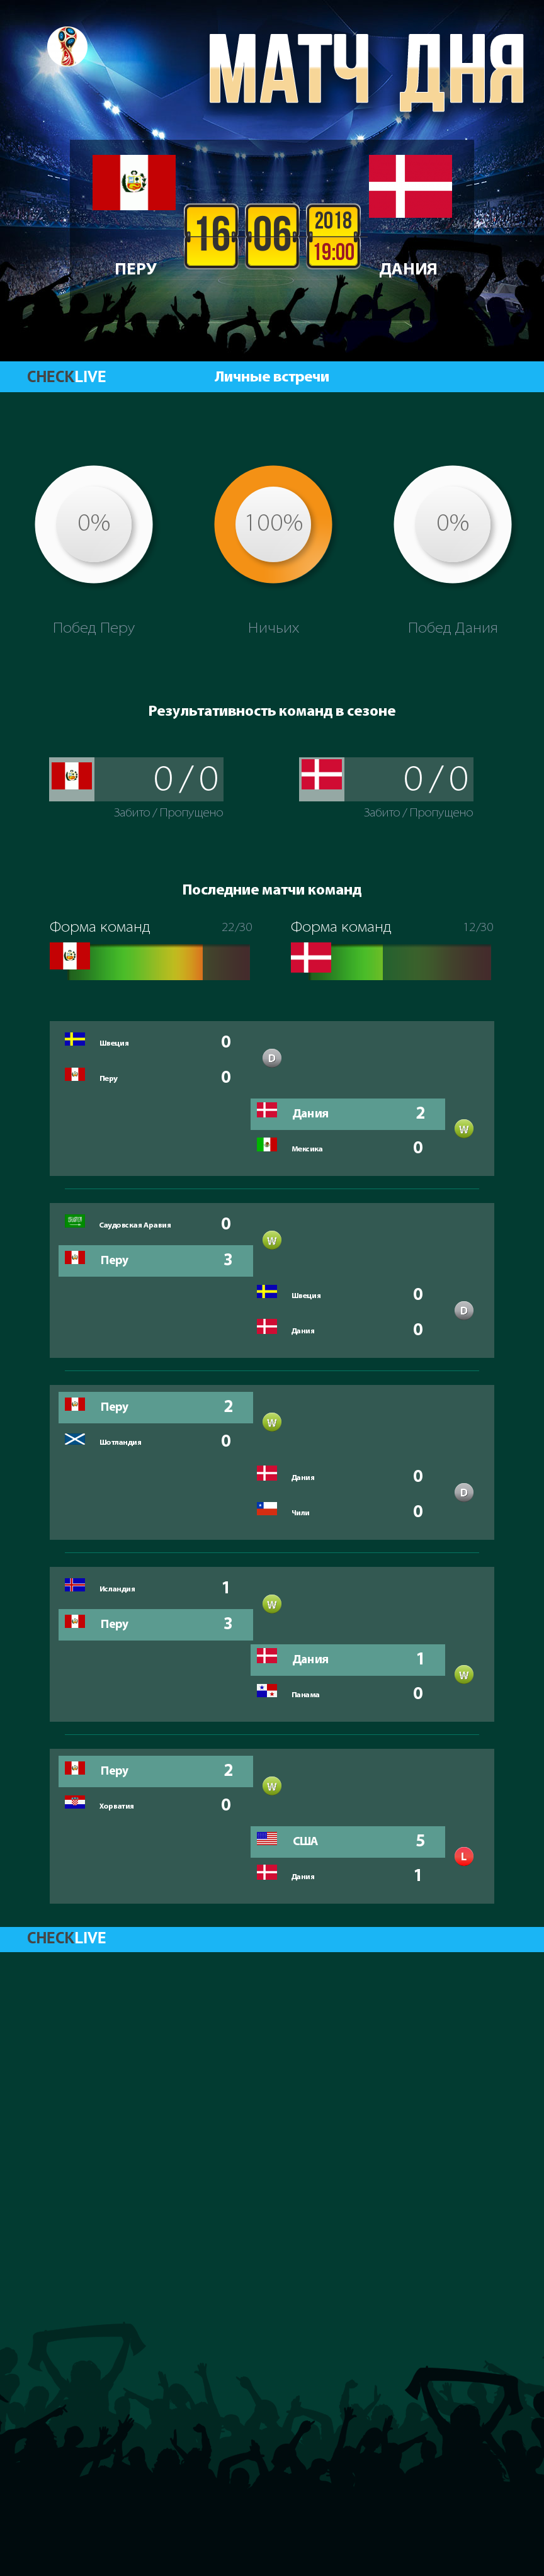 Инфографика Перу и Дания матч дня 16.06.2018